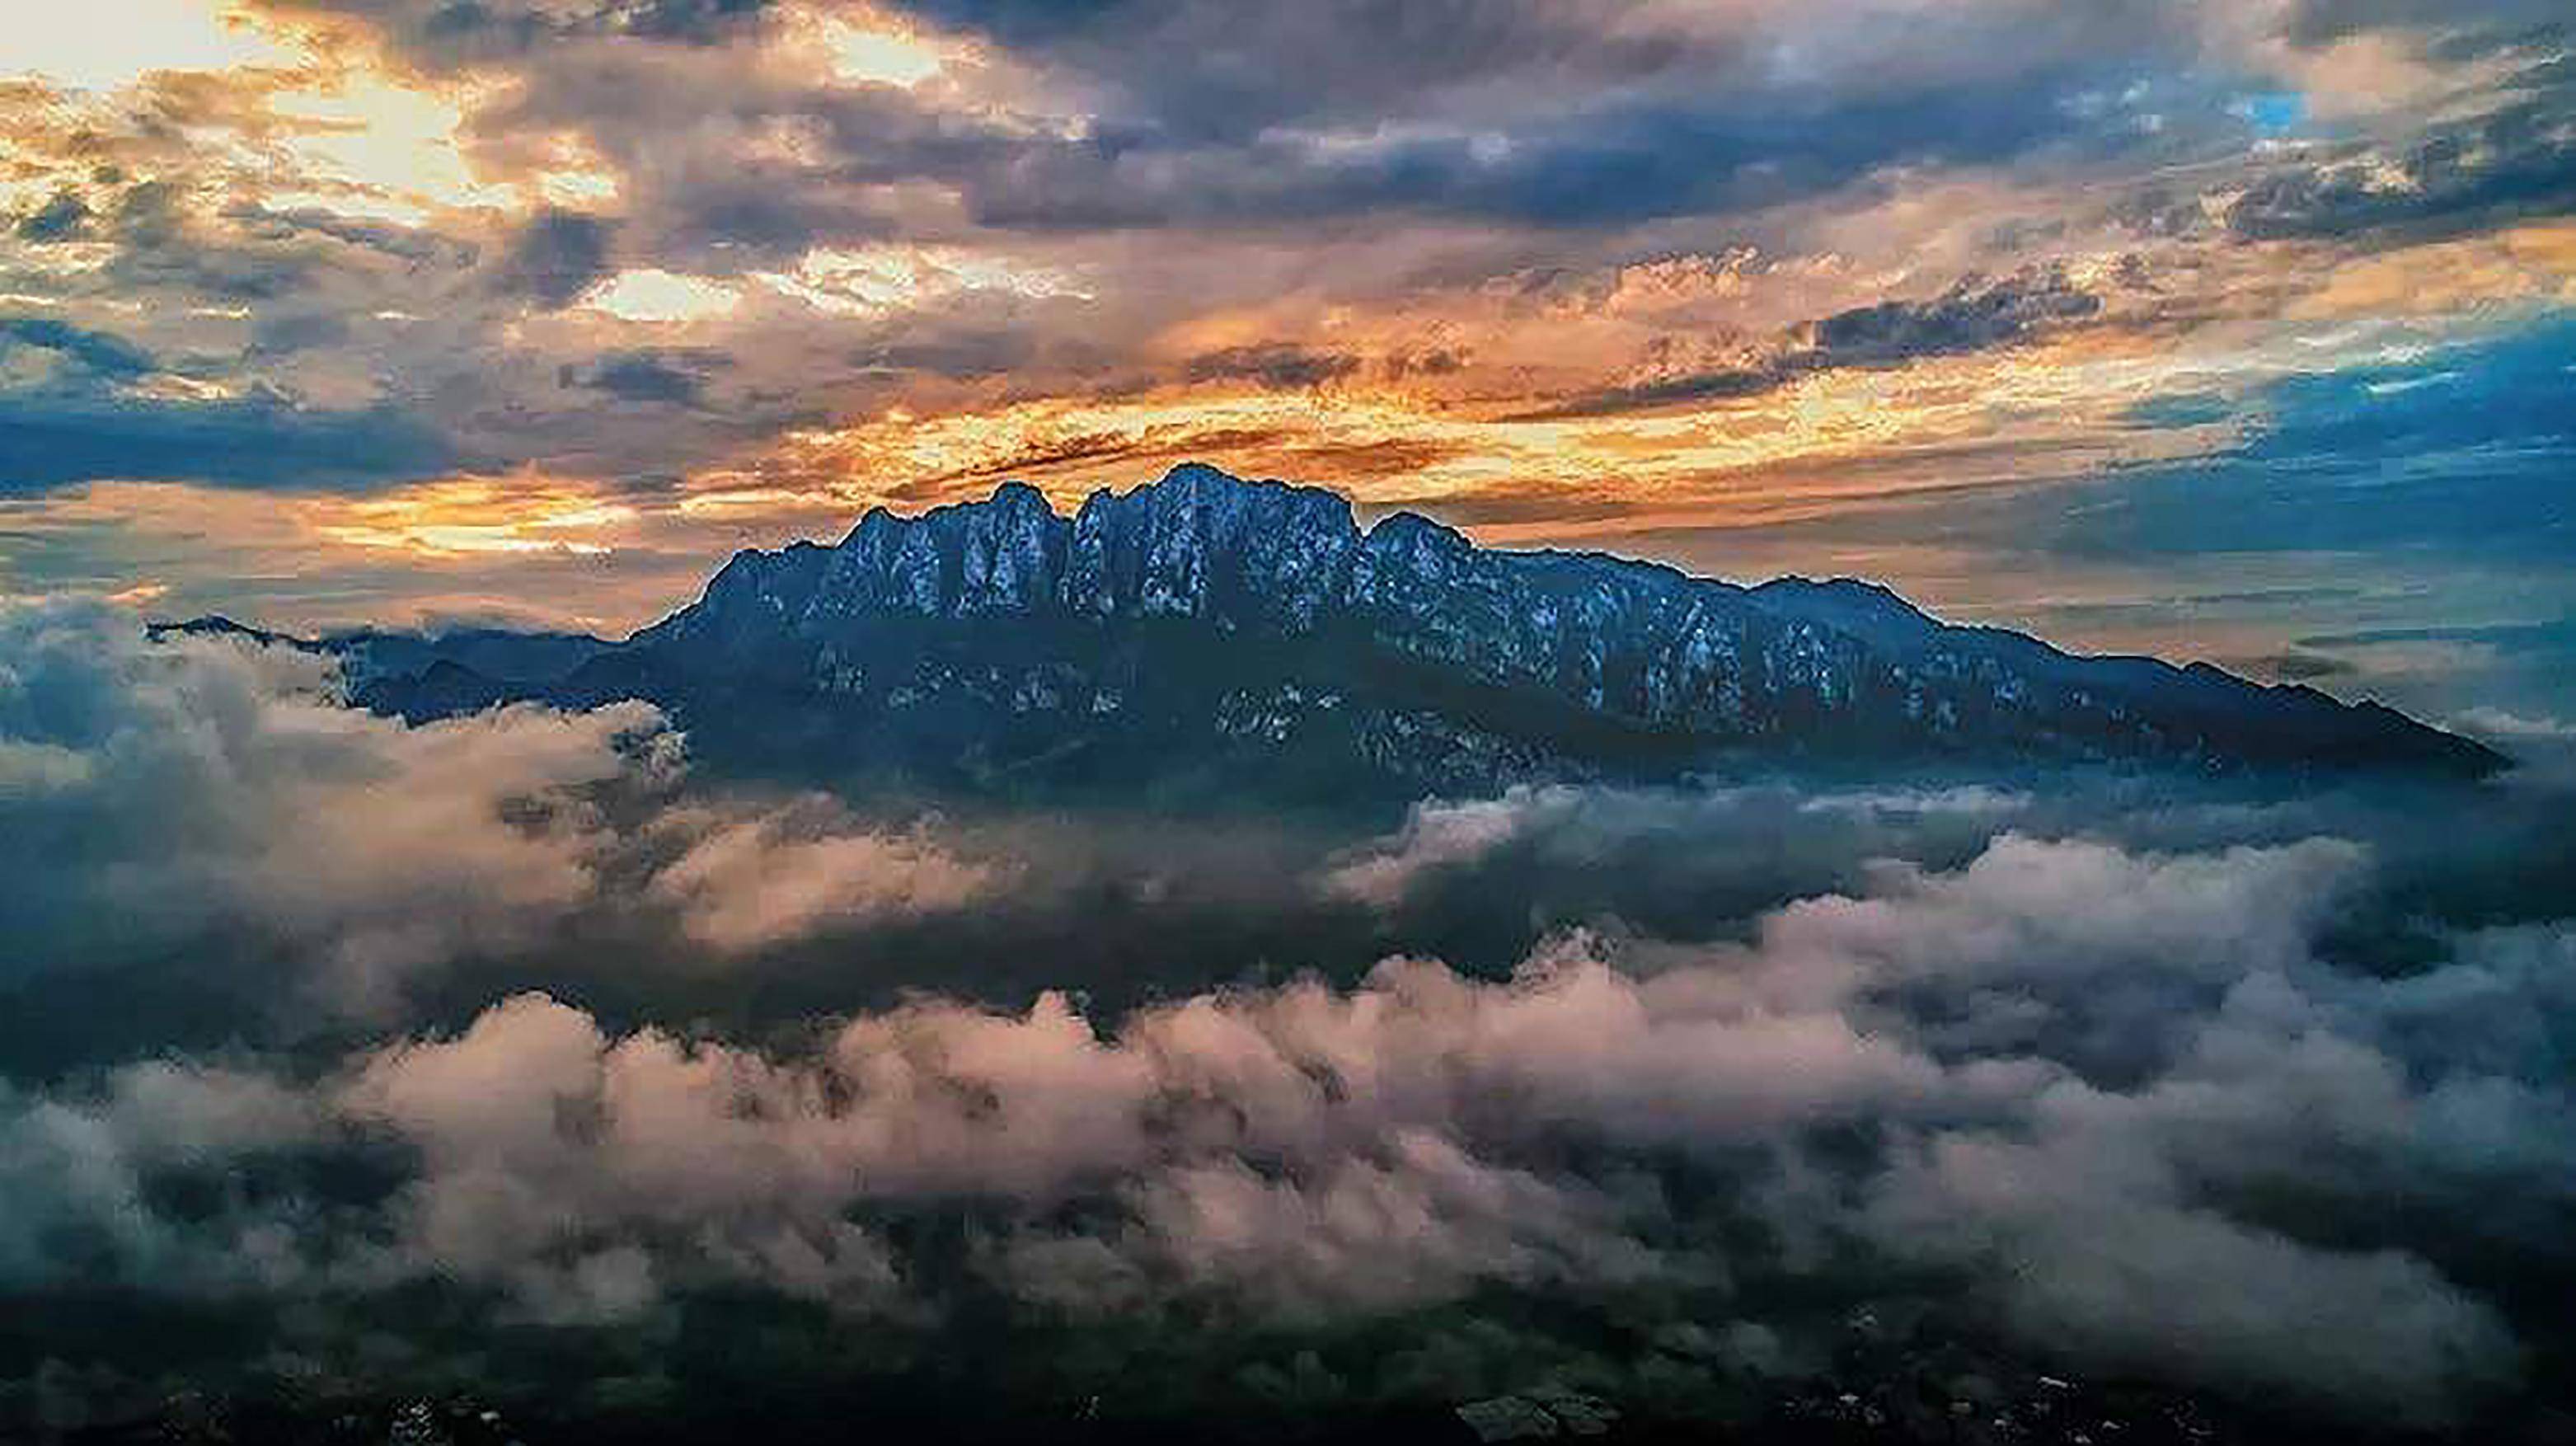 五老峰,是庐山最著名的山峰之一,位于牯岭街东南9公里,主峰海拔1358